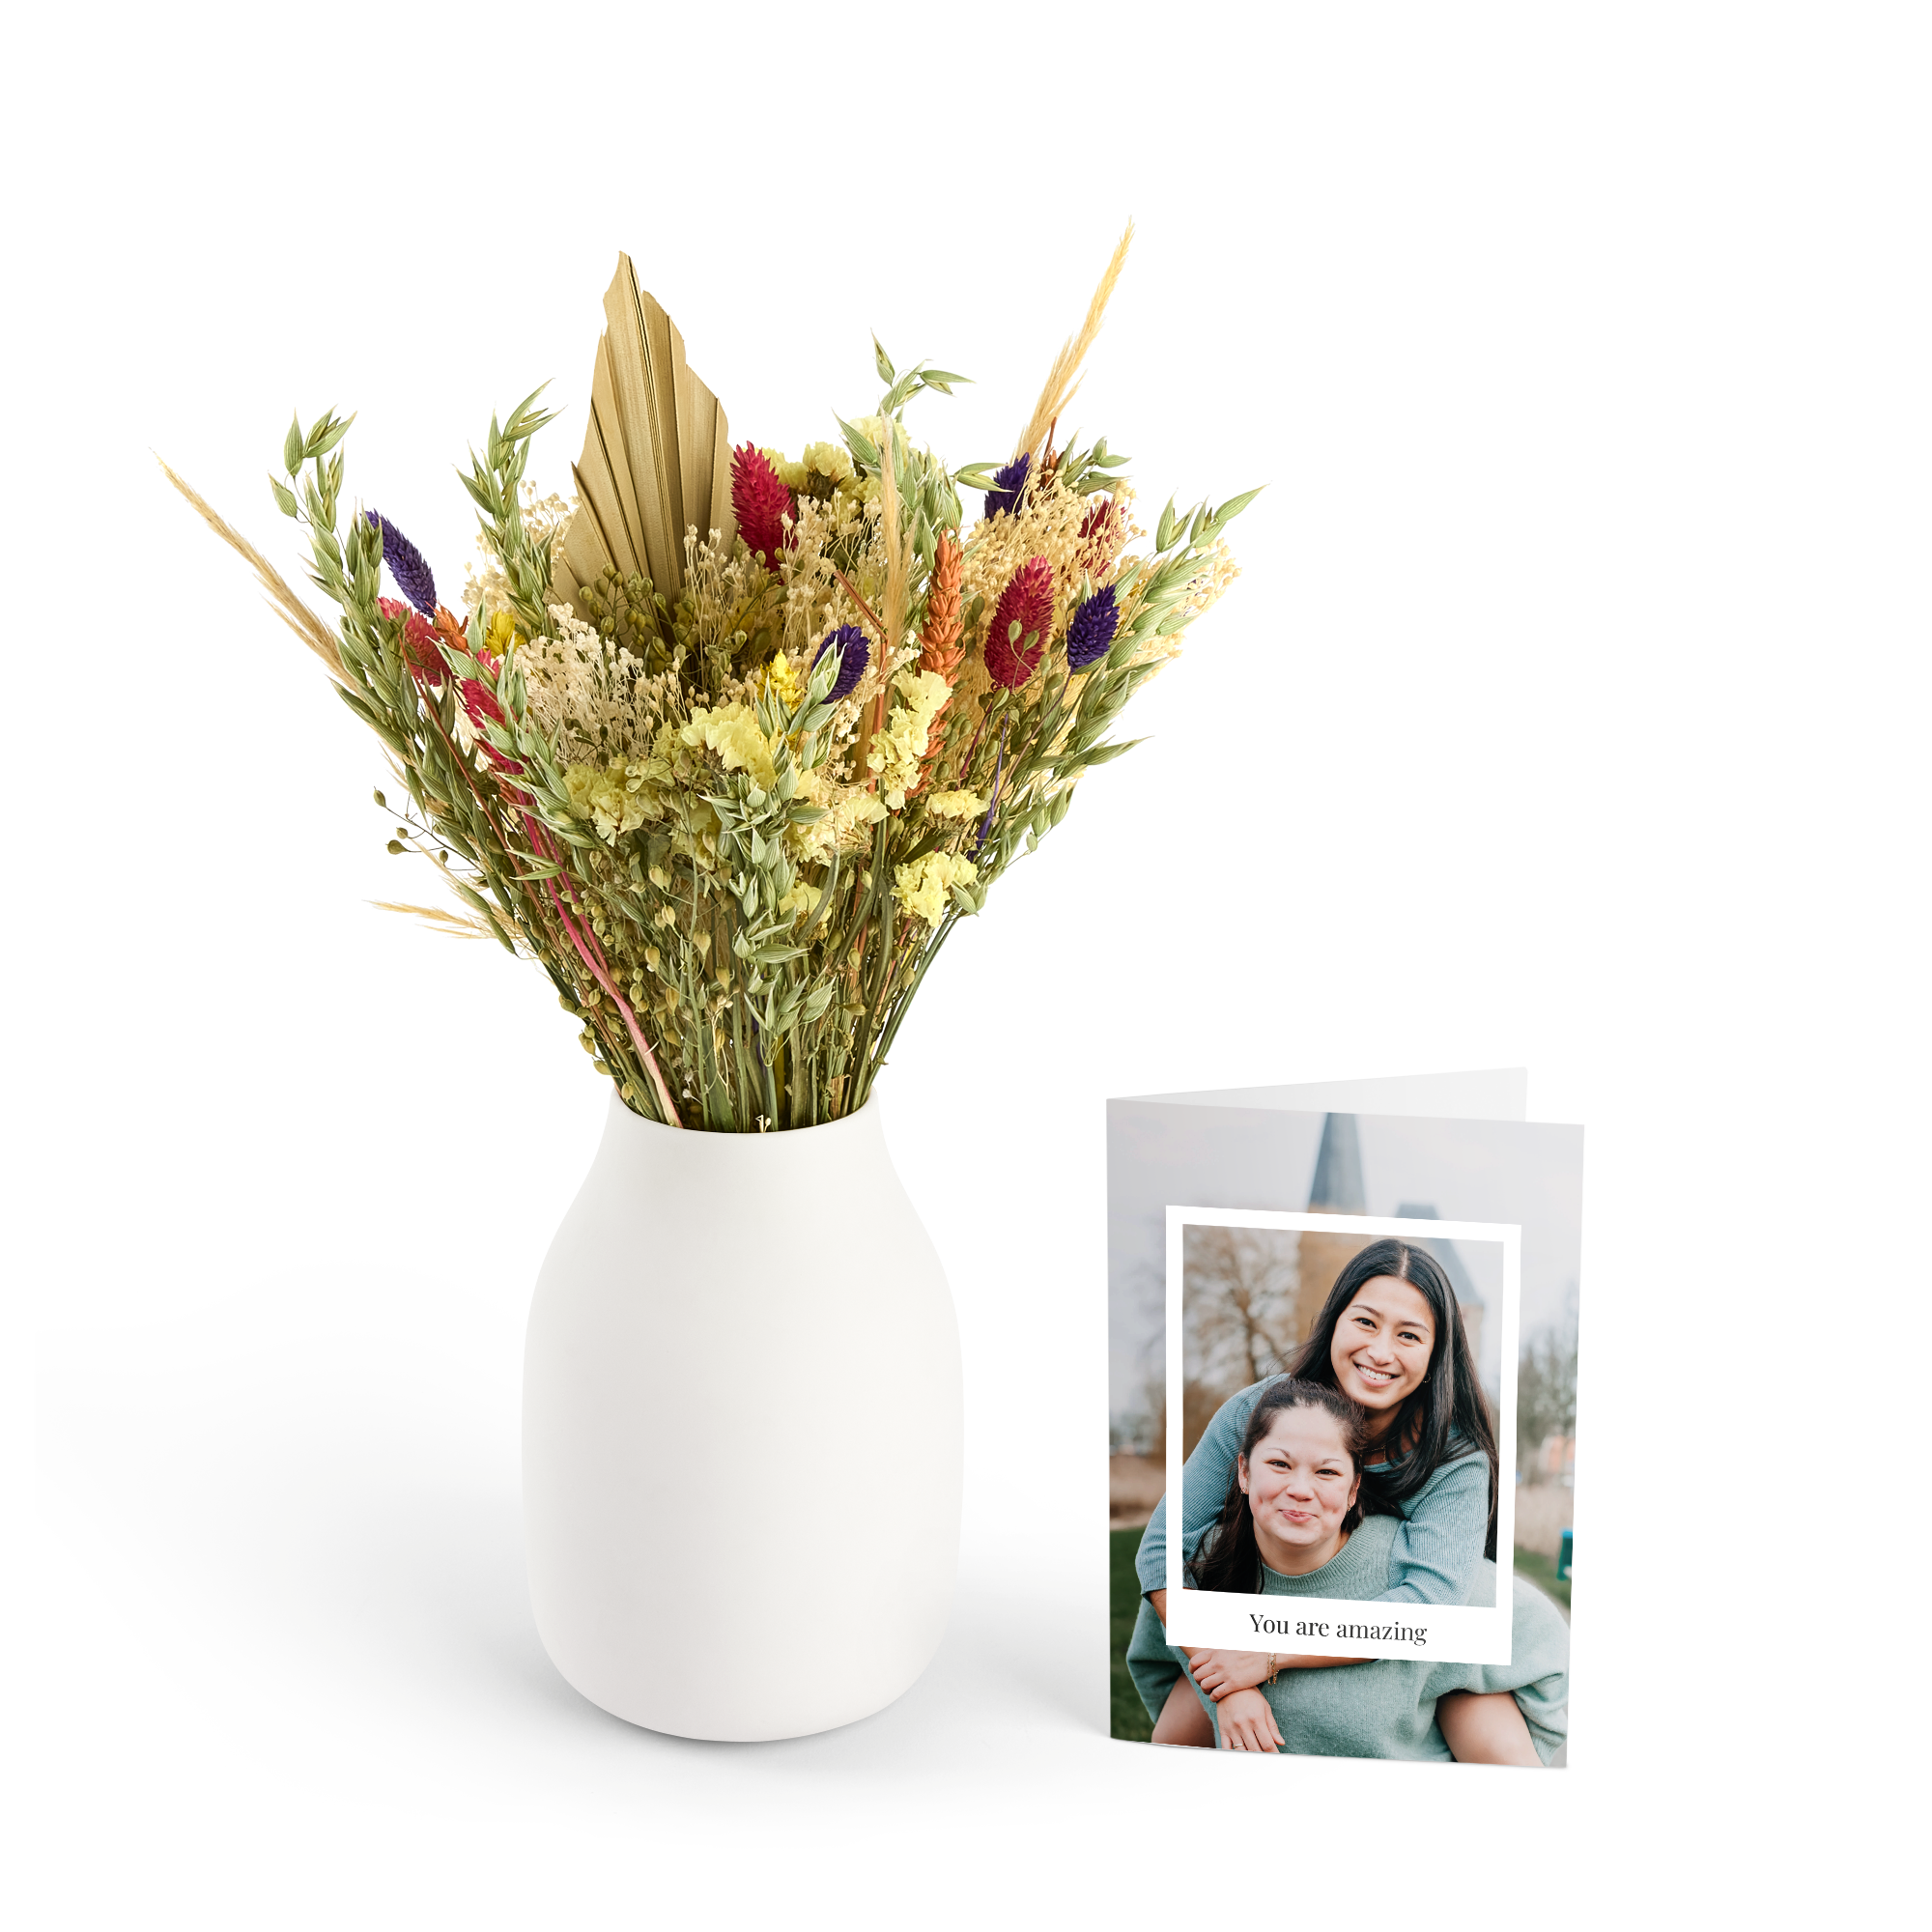 Kytica sušených kvetov s personalizovaným pozdravom- Viacfarebná